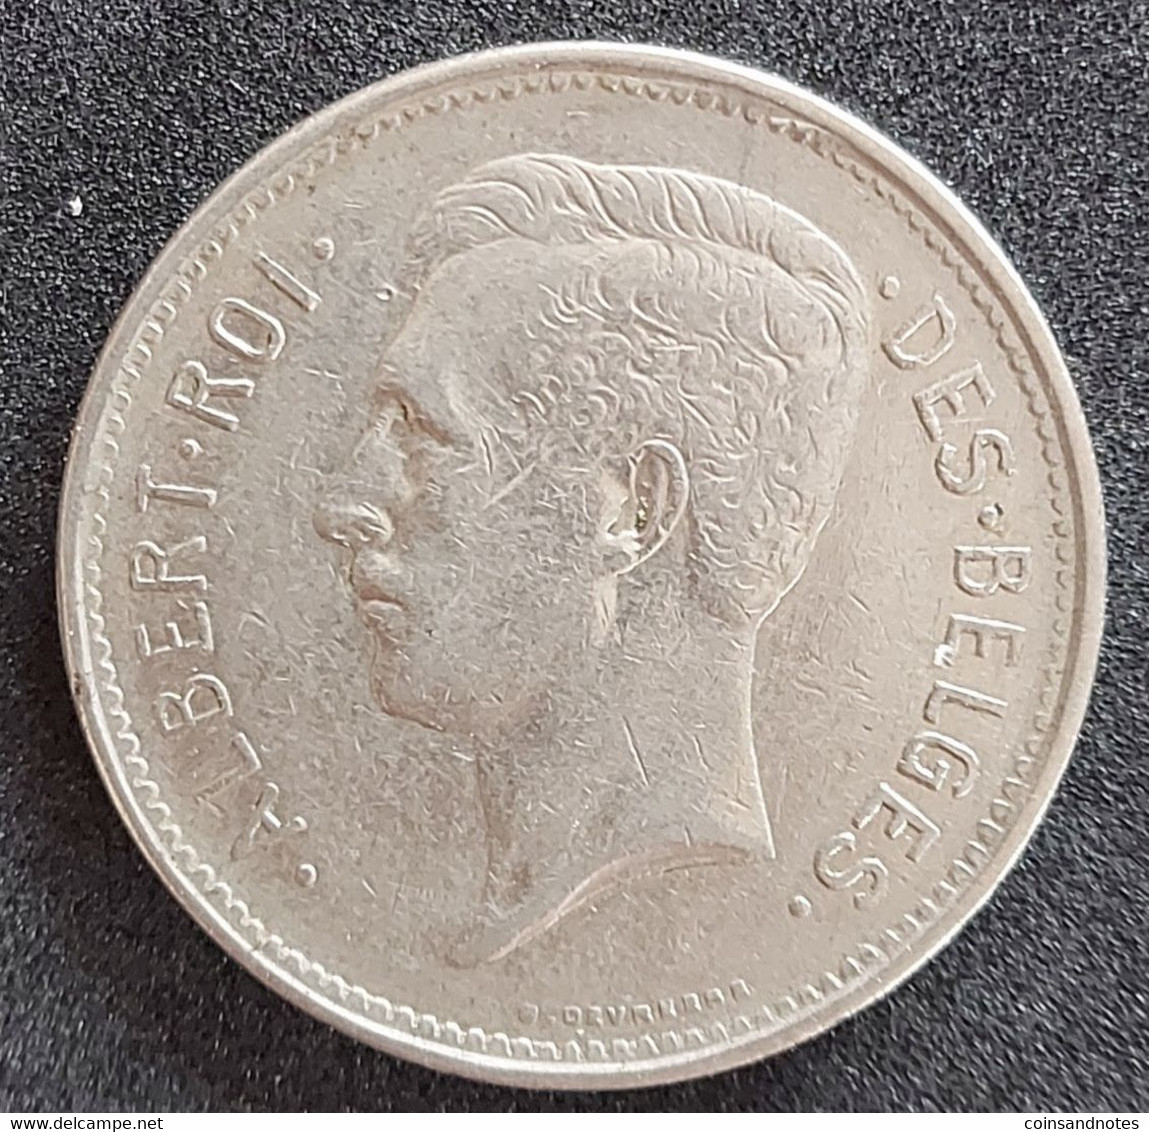 Belgium 1932 - 5 Francs/Un Belga Nikkel FR - Albert I - Morin 386b - Pr - 5 Francs & 1 Belga